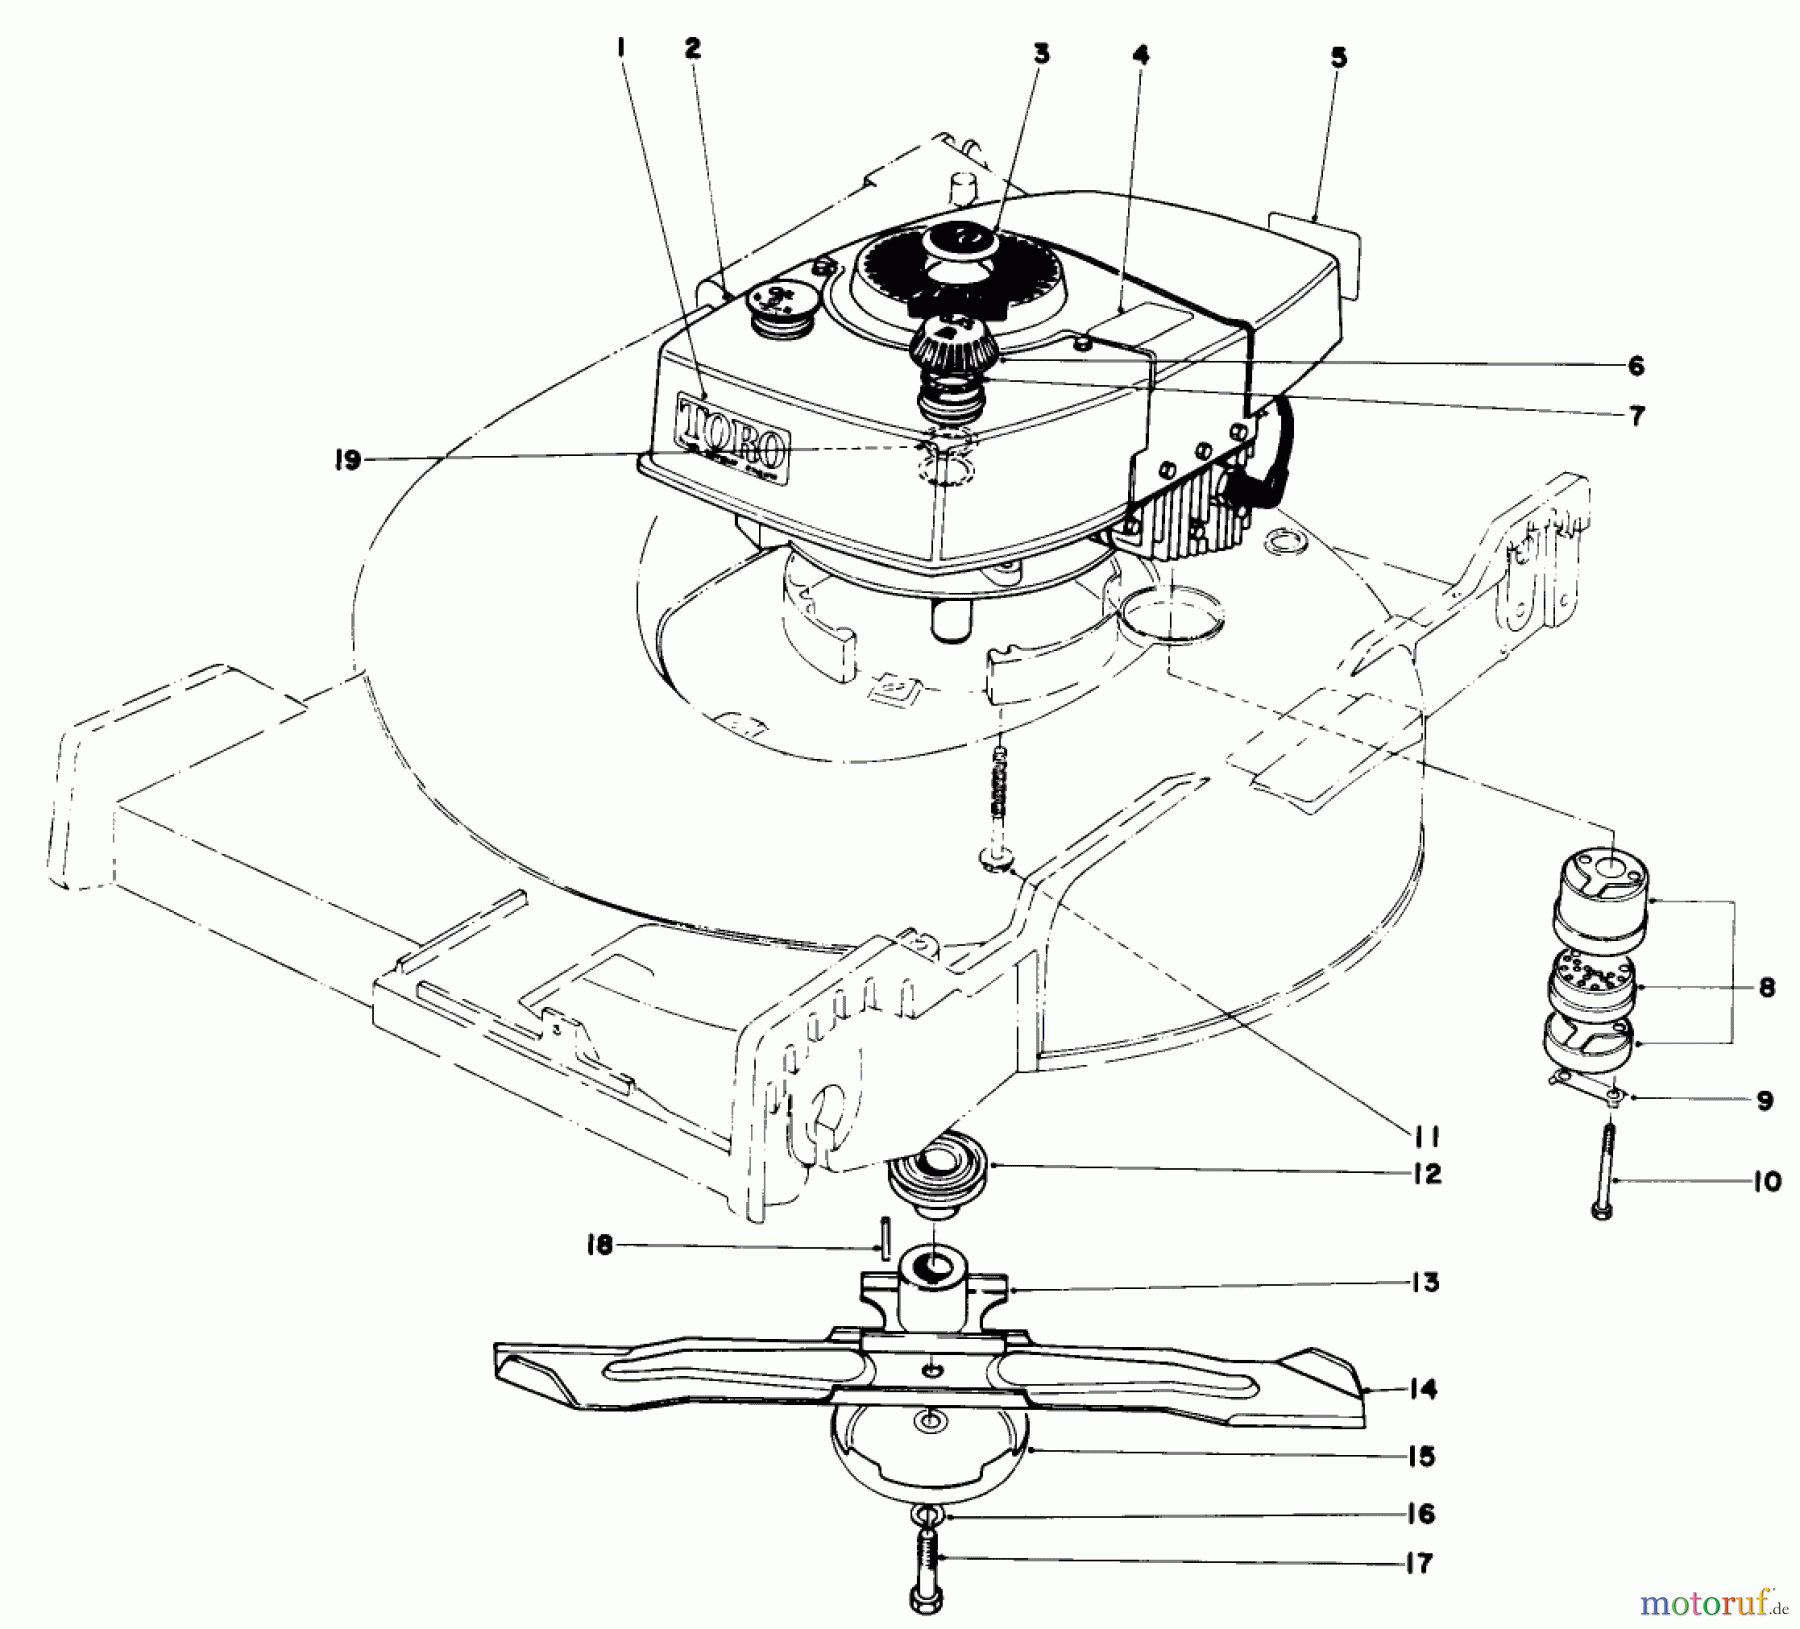  Toro Neu Mowers, Walk-Behind Seite 1 20562 - Toro Lawnmower, 1977 (7000001-7999999) ENGINE ASSEMBLY (MODEL NO. 20562)